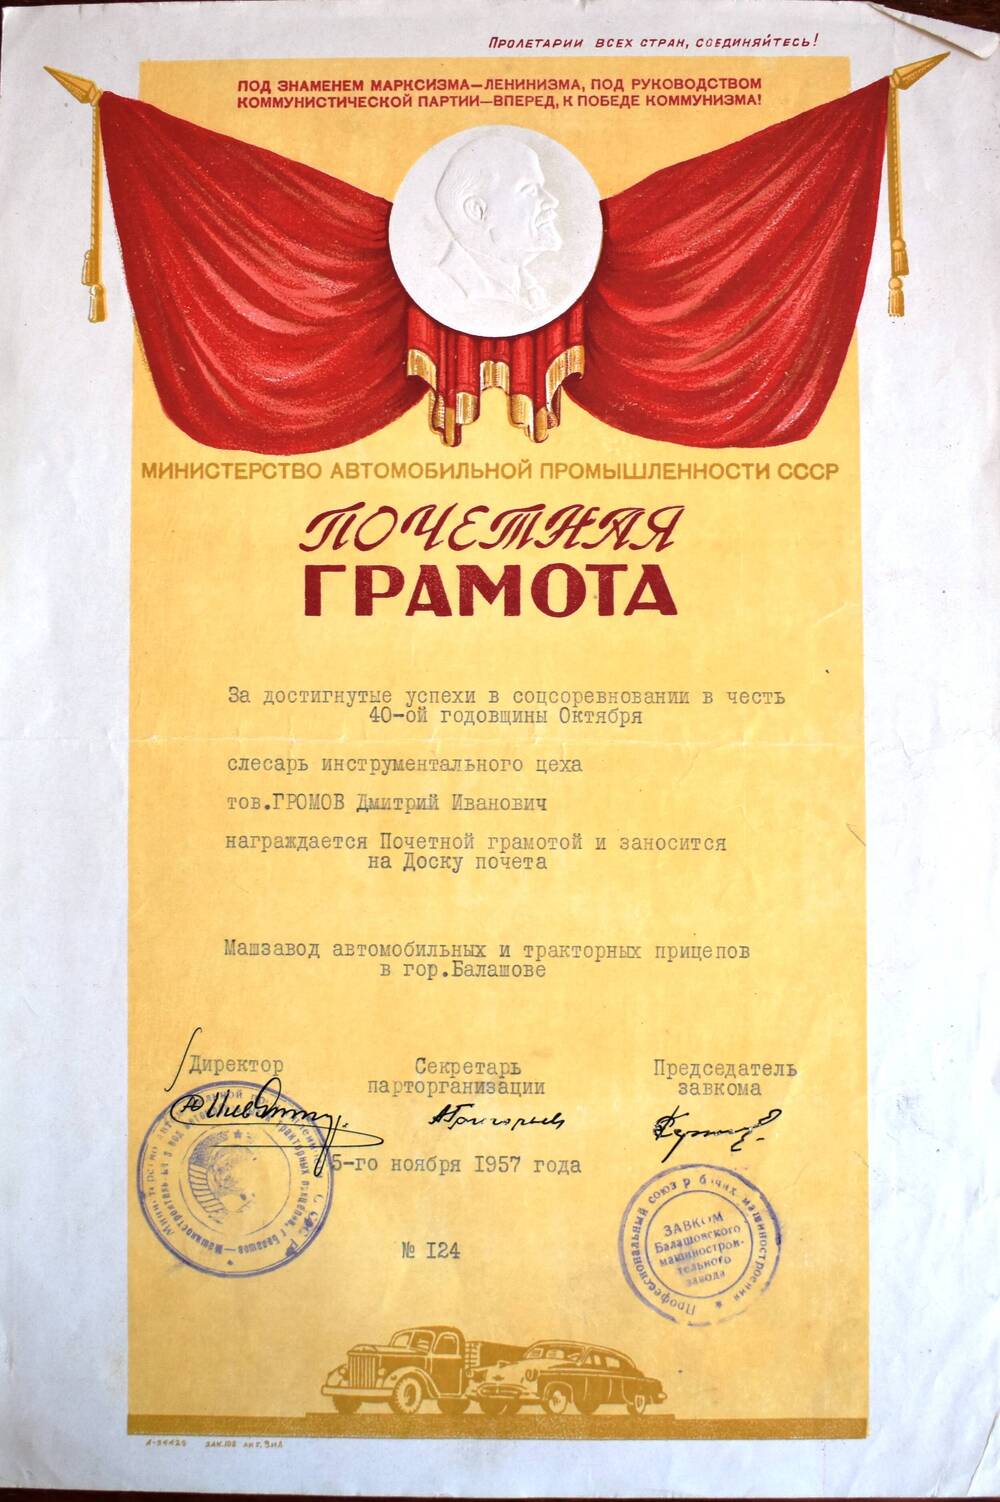 Грамота почетная № 124
с занесением на Доску почета
Громова Дмитрия Ивановича
за достигнутые успехи в соцсоревновании